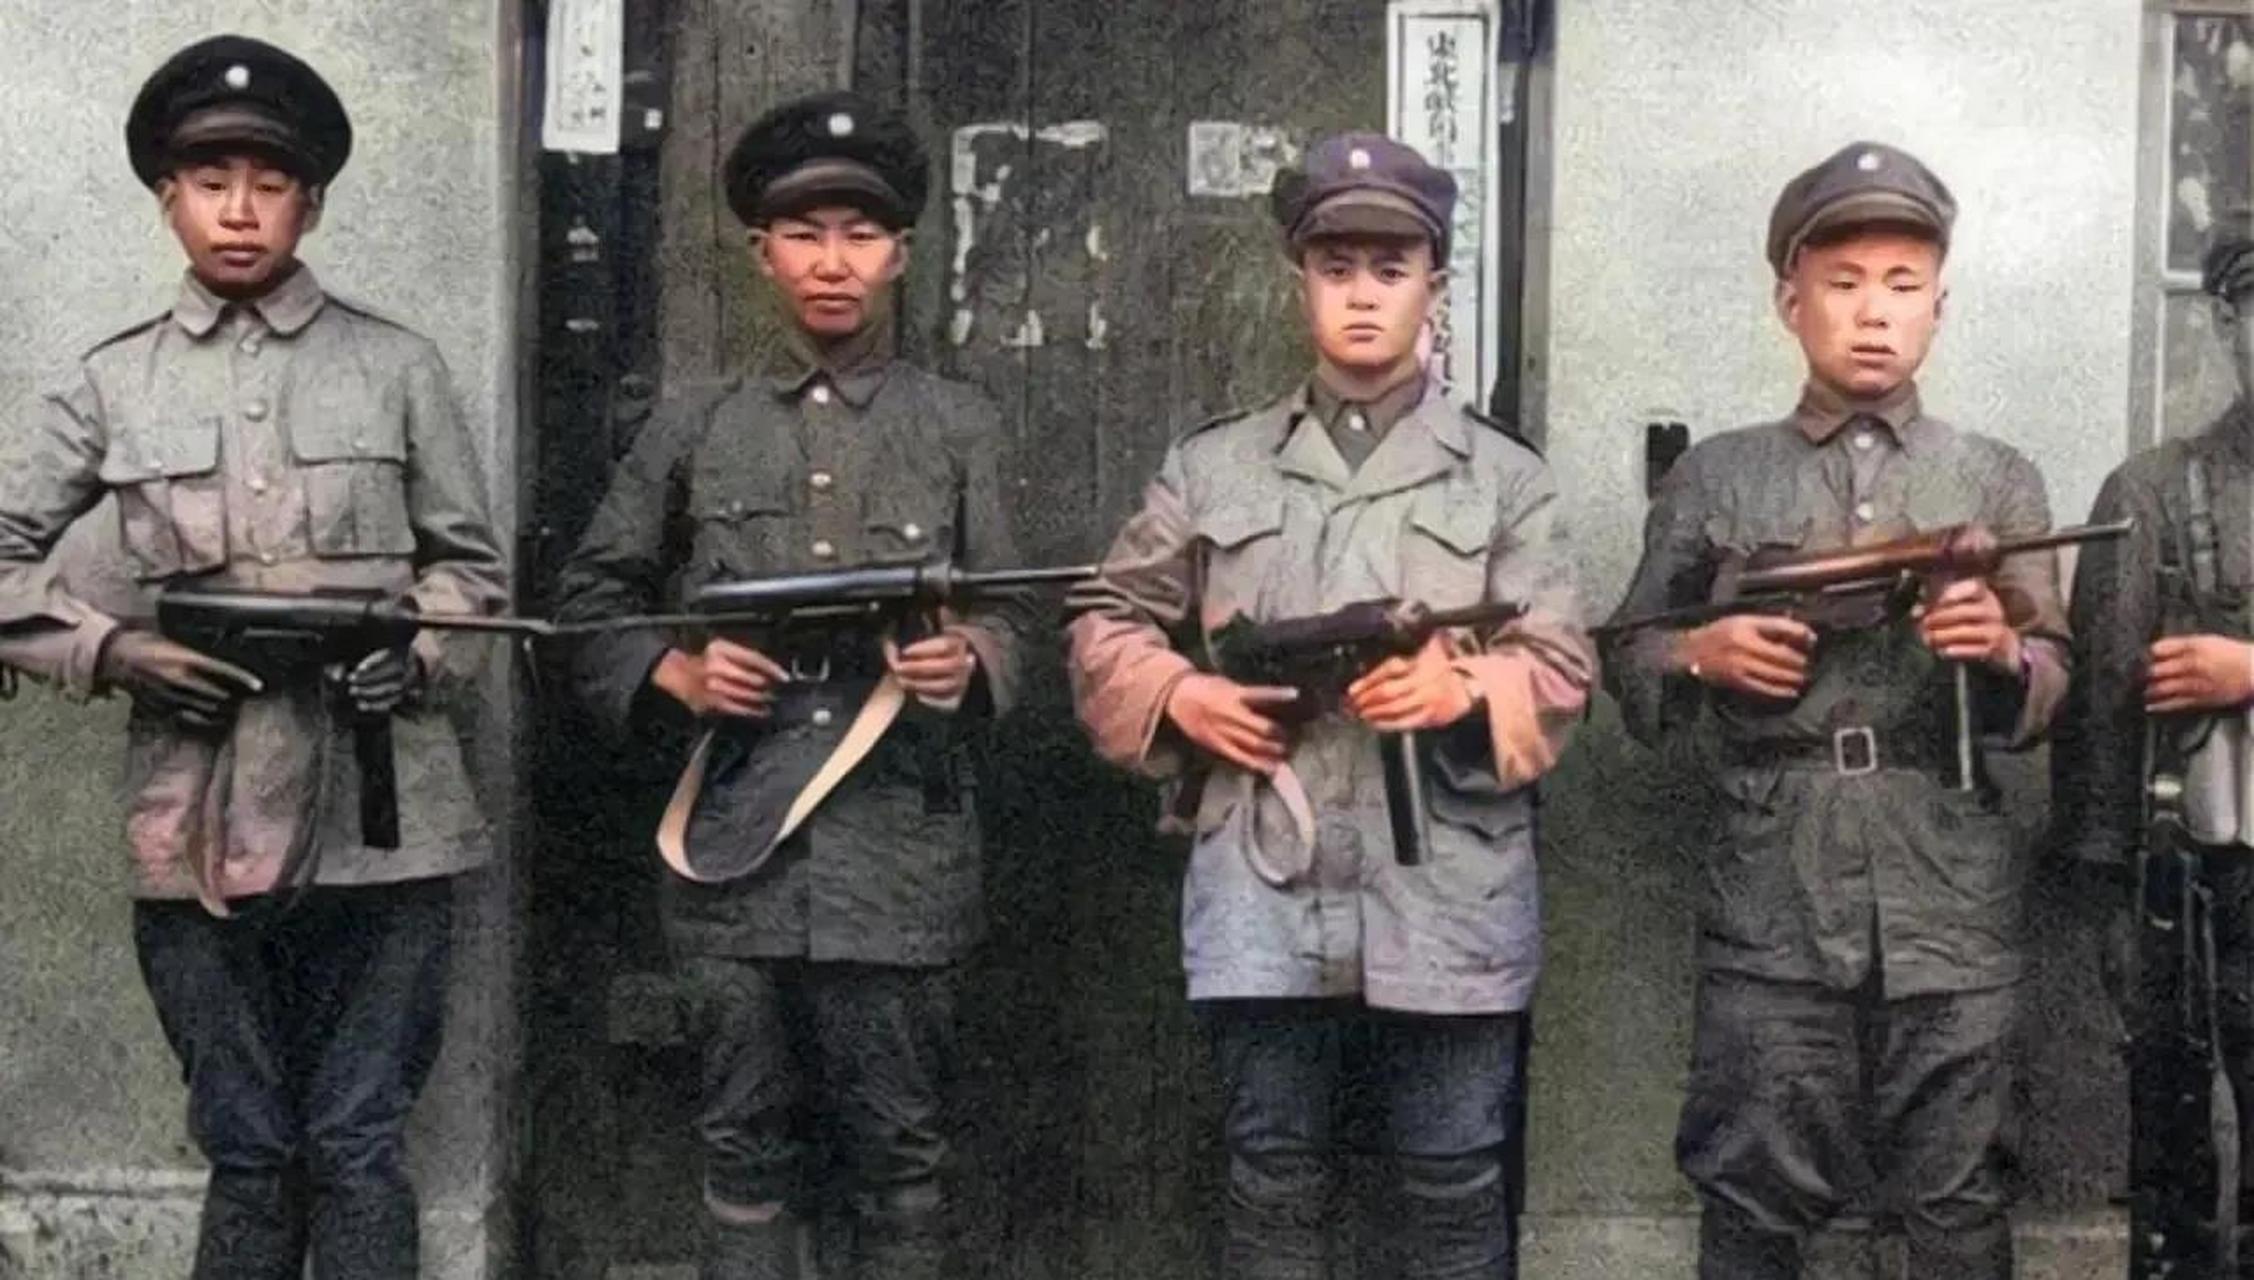 几名国军士兵,手持美械冲锋枪,留下的一张合影,当时随着国民党反动派